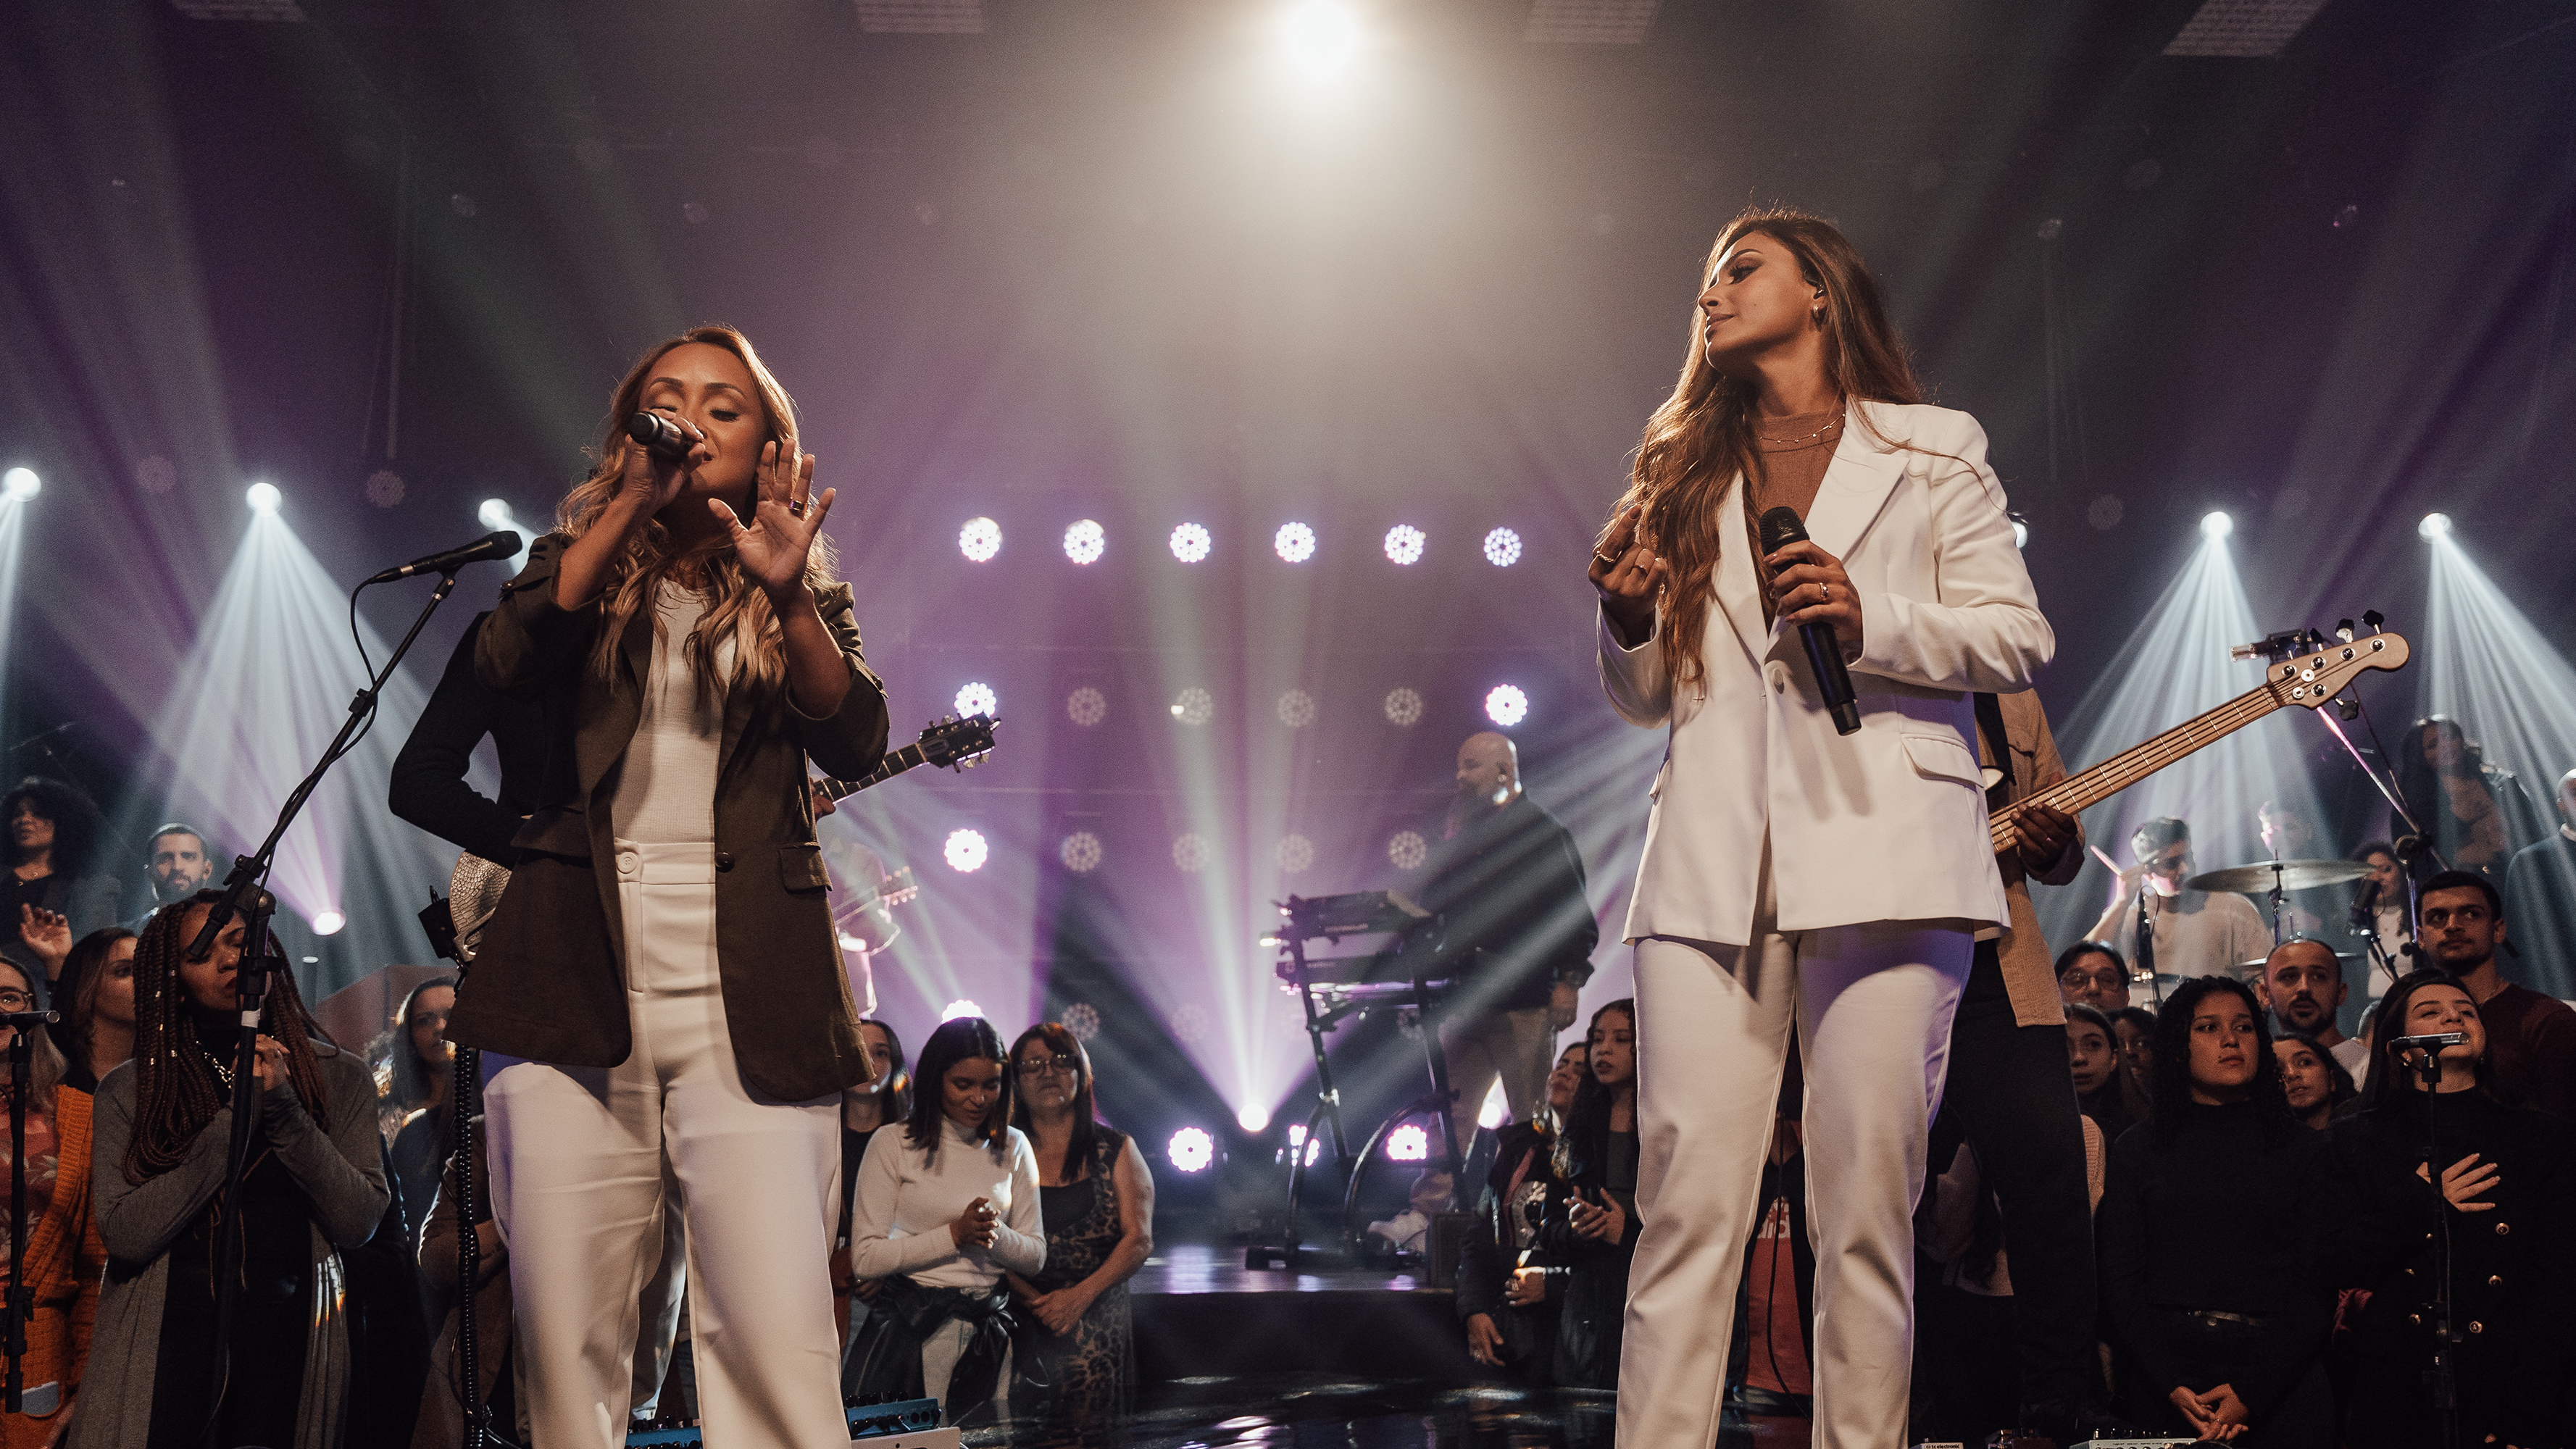 Mari Borges e Bruna Karla cantam sobre o poder da oração em novo single